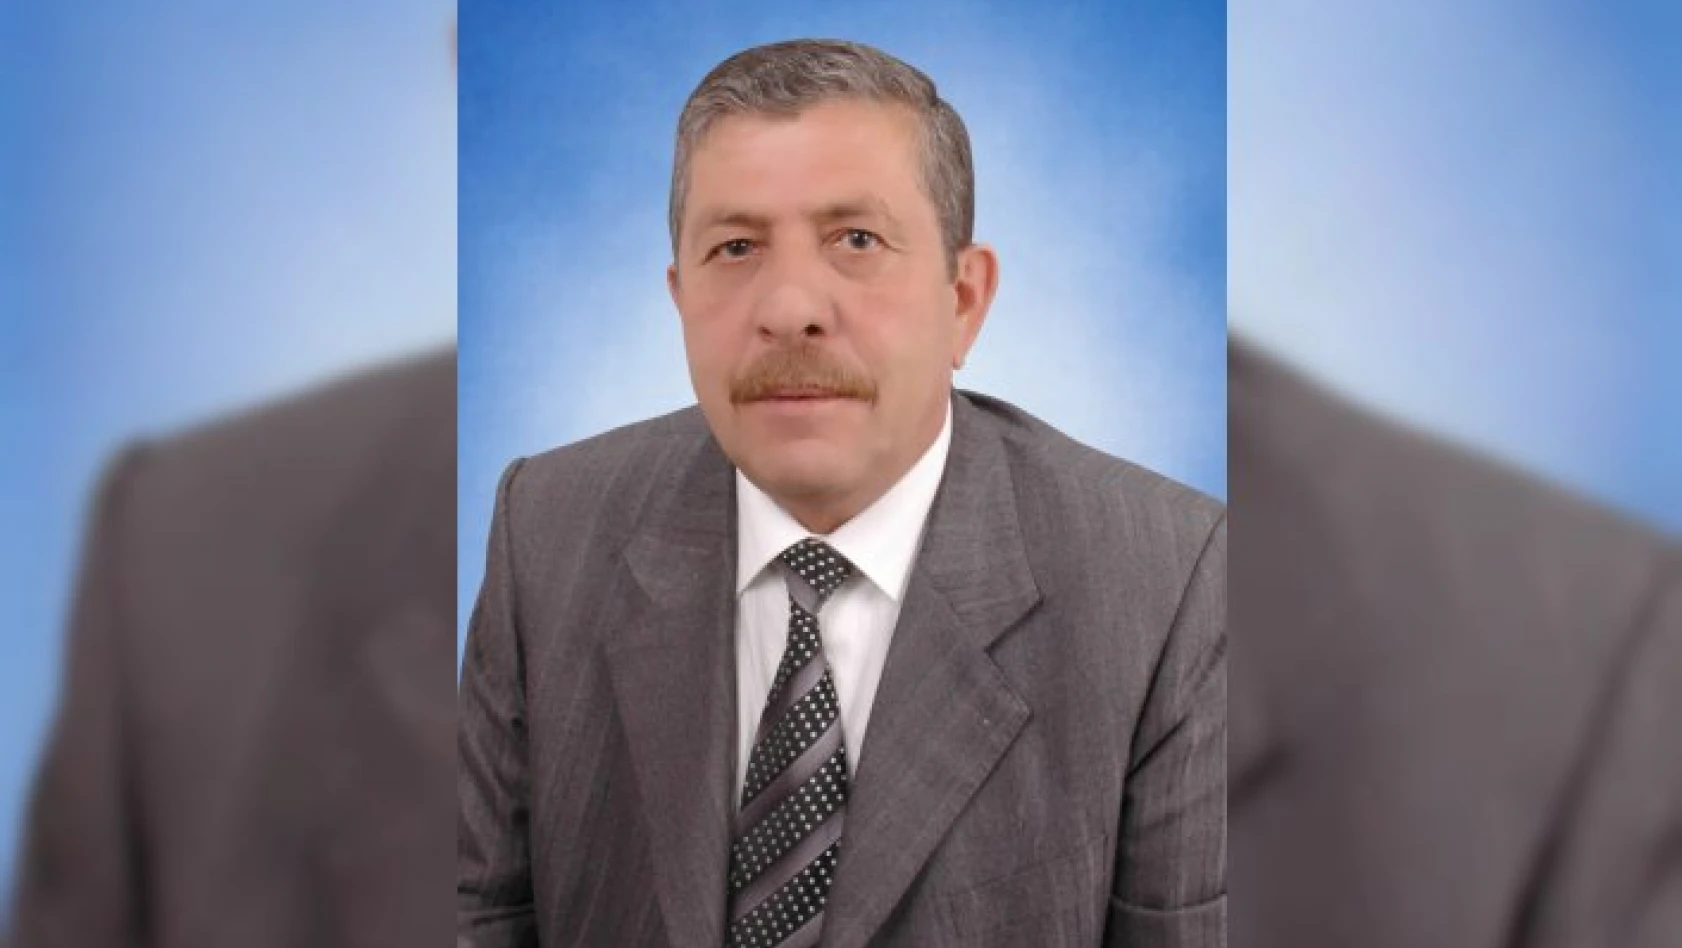 Hanönü Belediyespor Kulübünün kurucu başkanı öldü